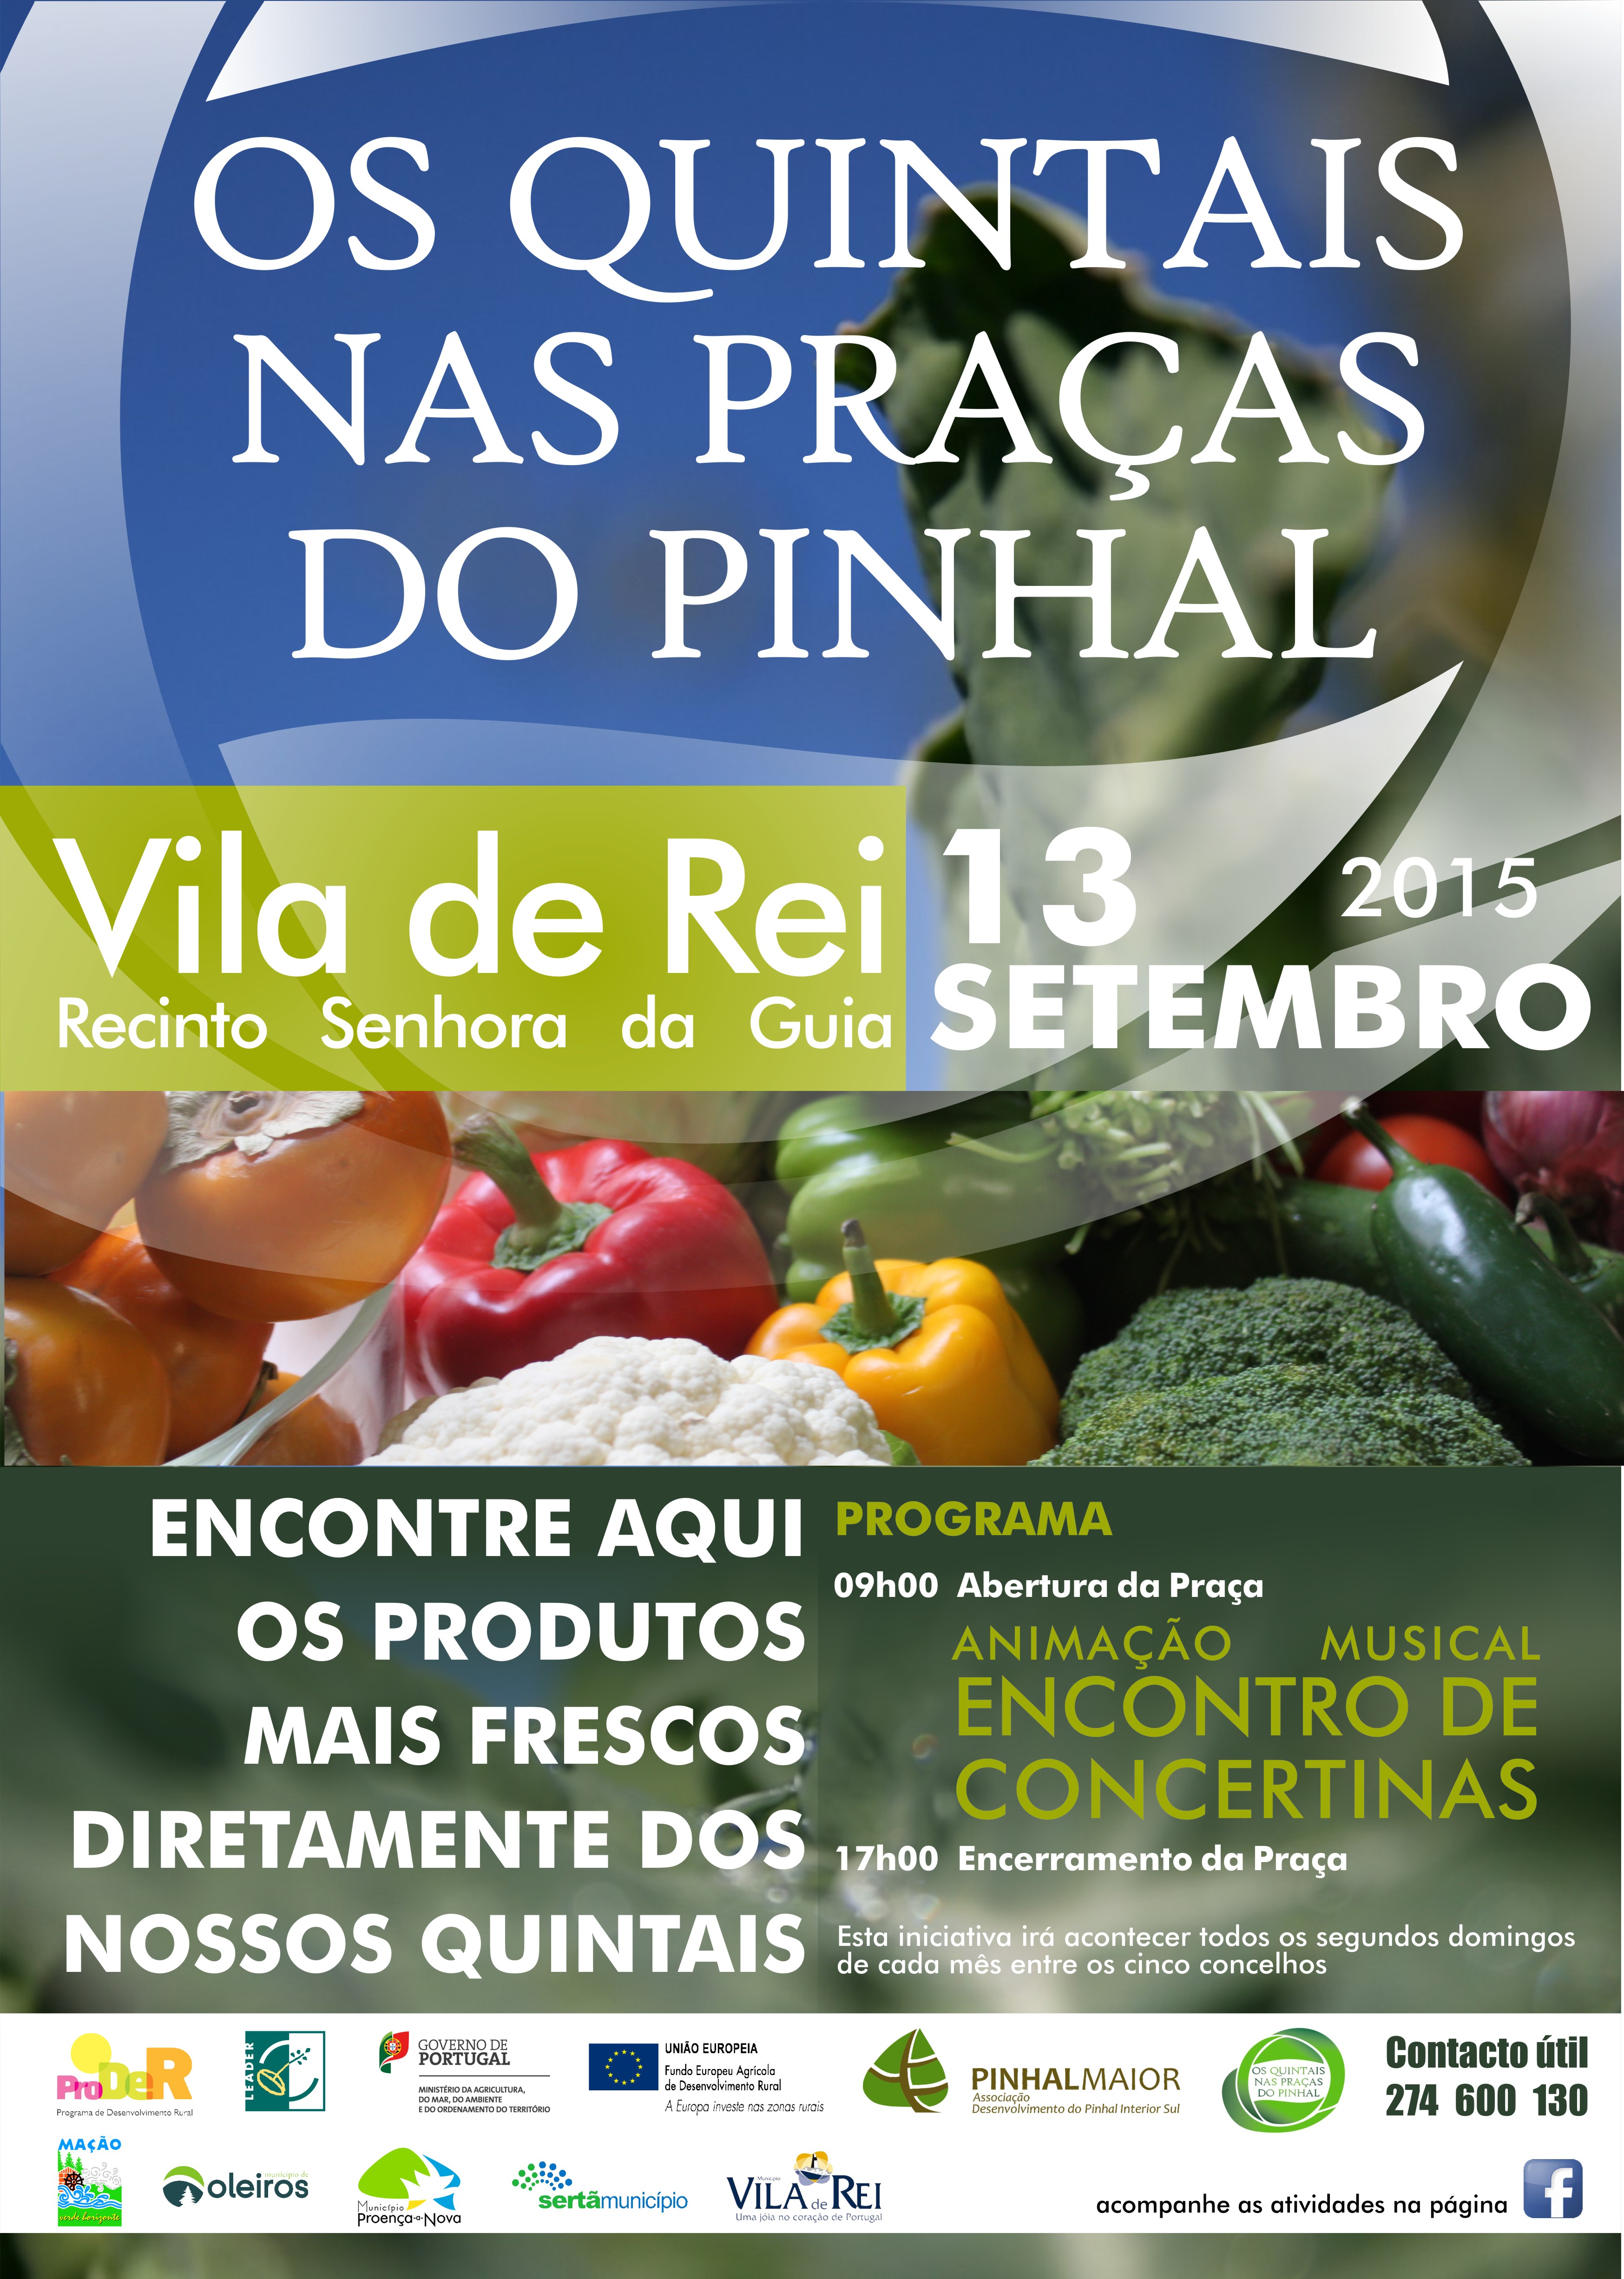 Vila de Rei recebe 35ª edição dos “Quintais nas Praças do Pinhal”